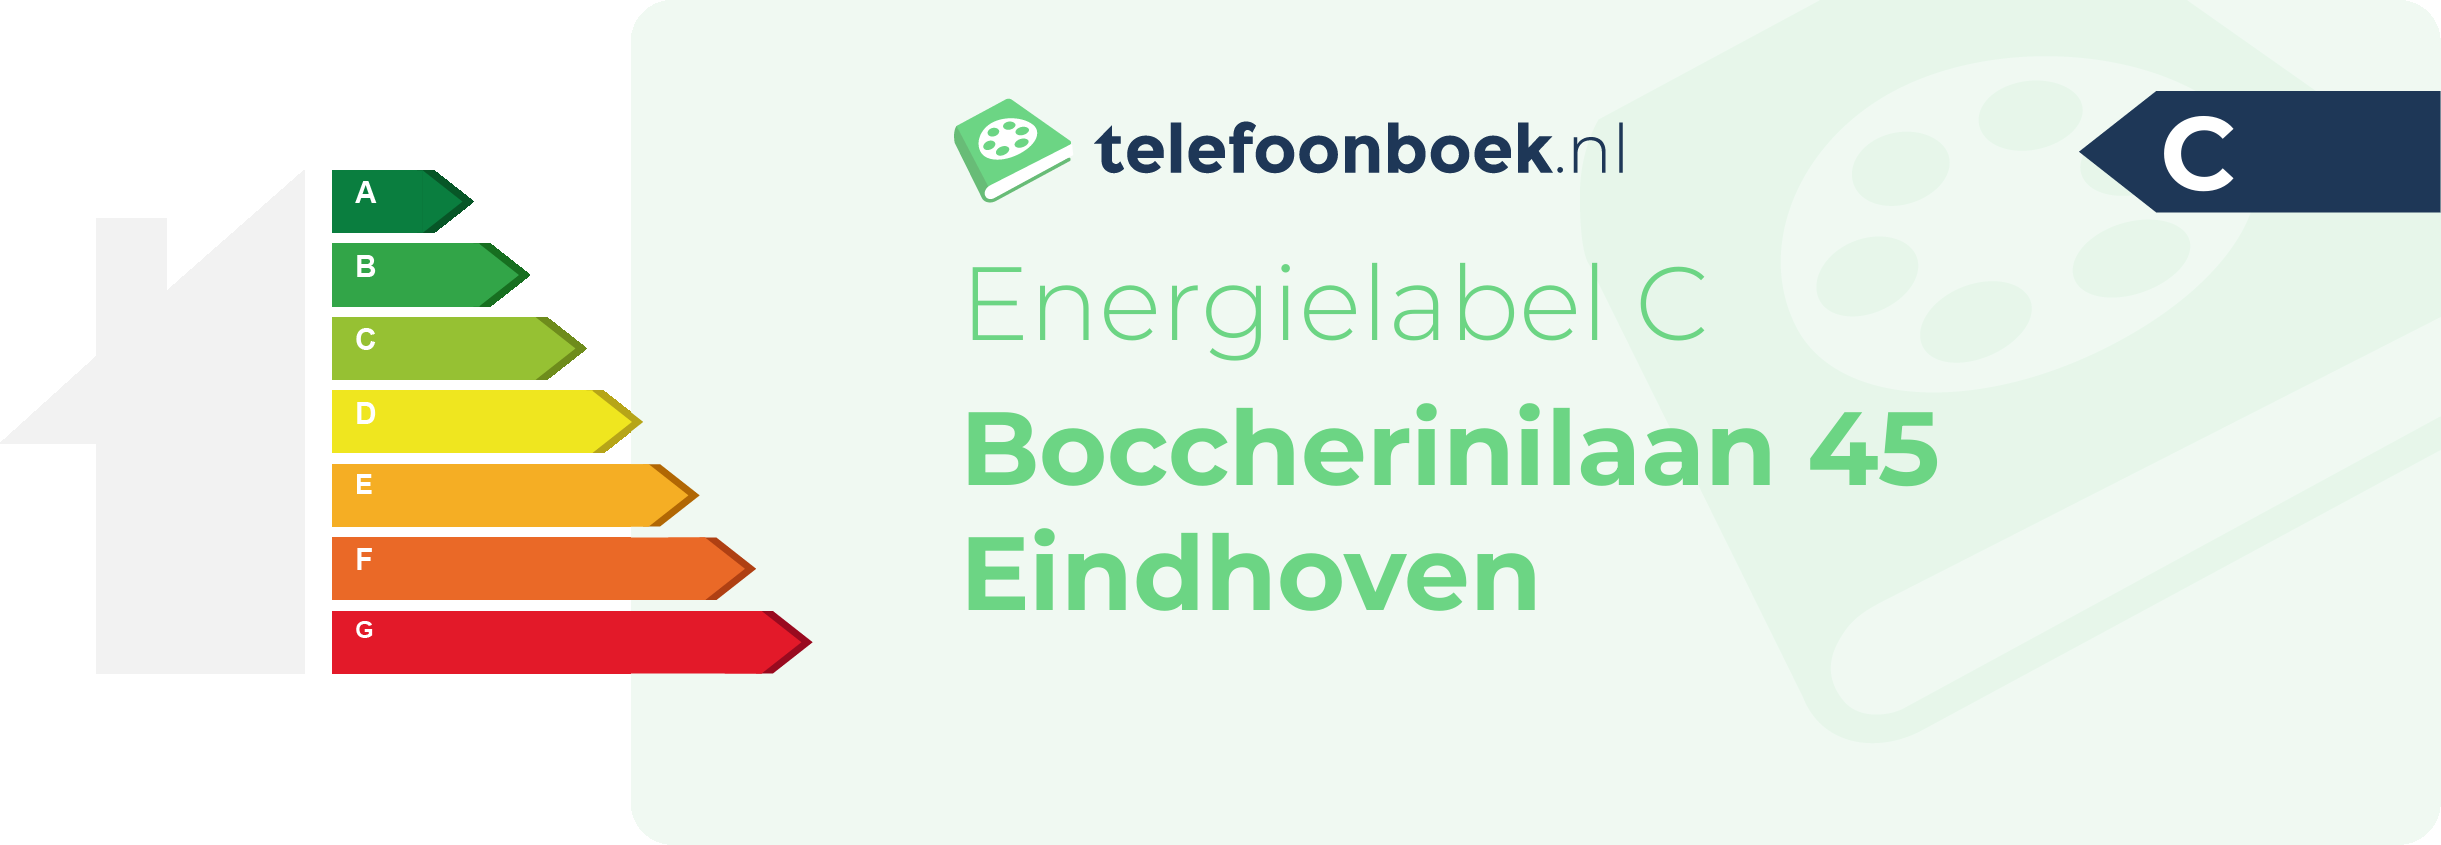 Energielabel Boccherinilaan 45 Eindhoven